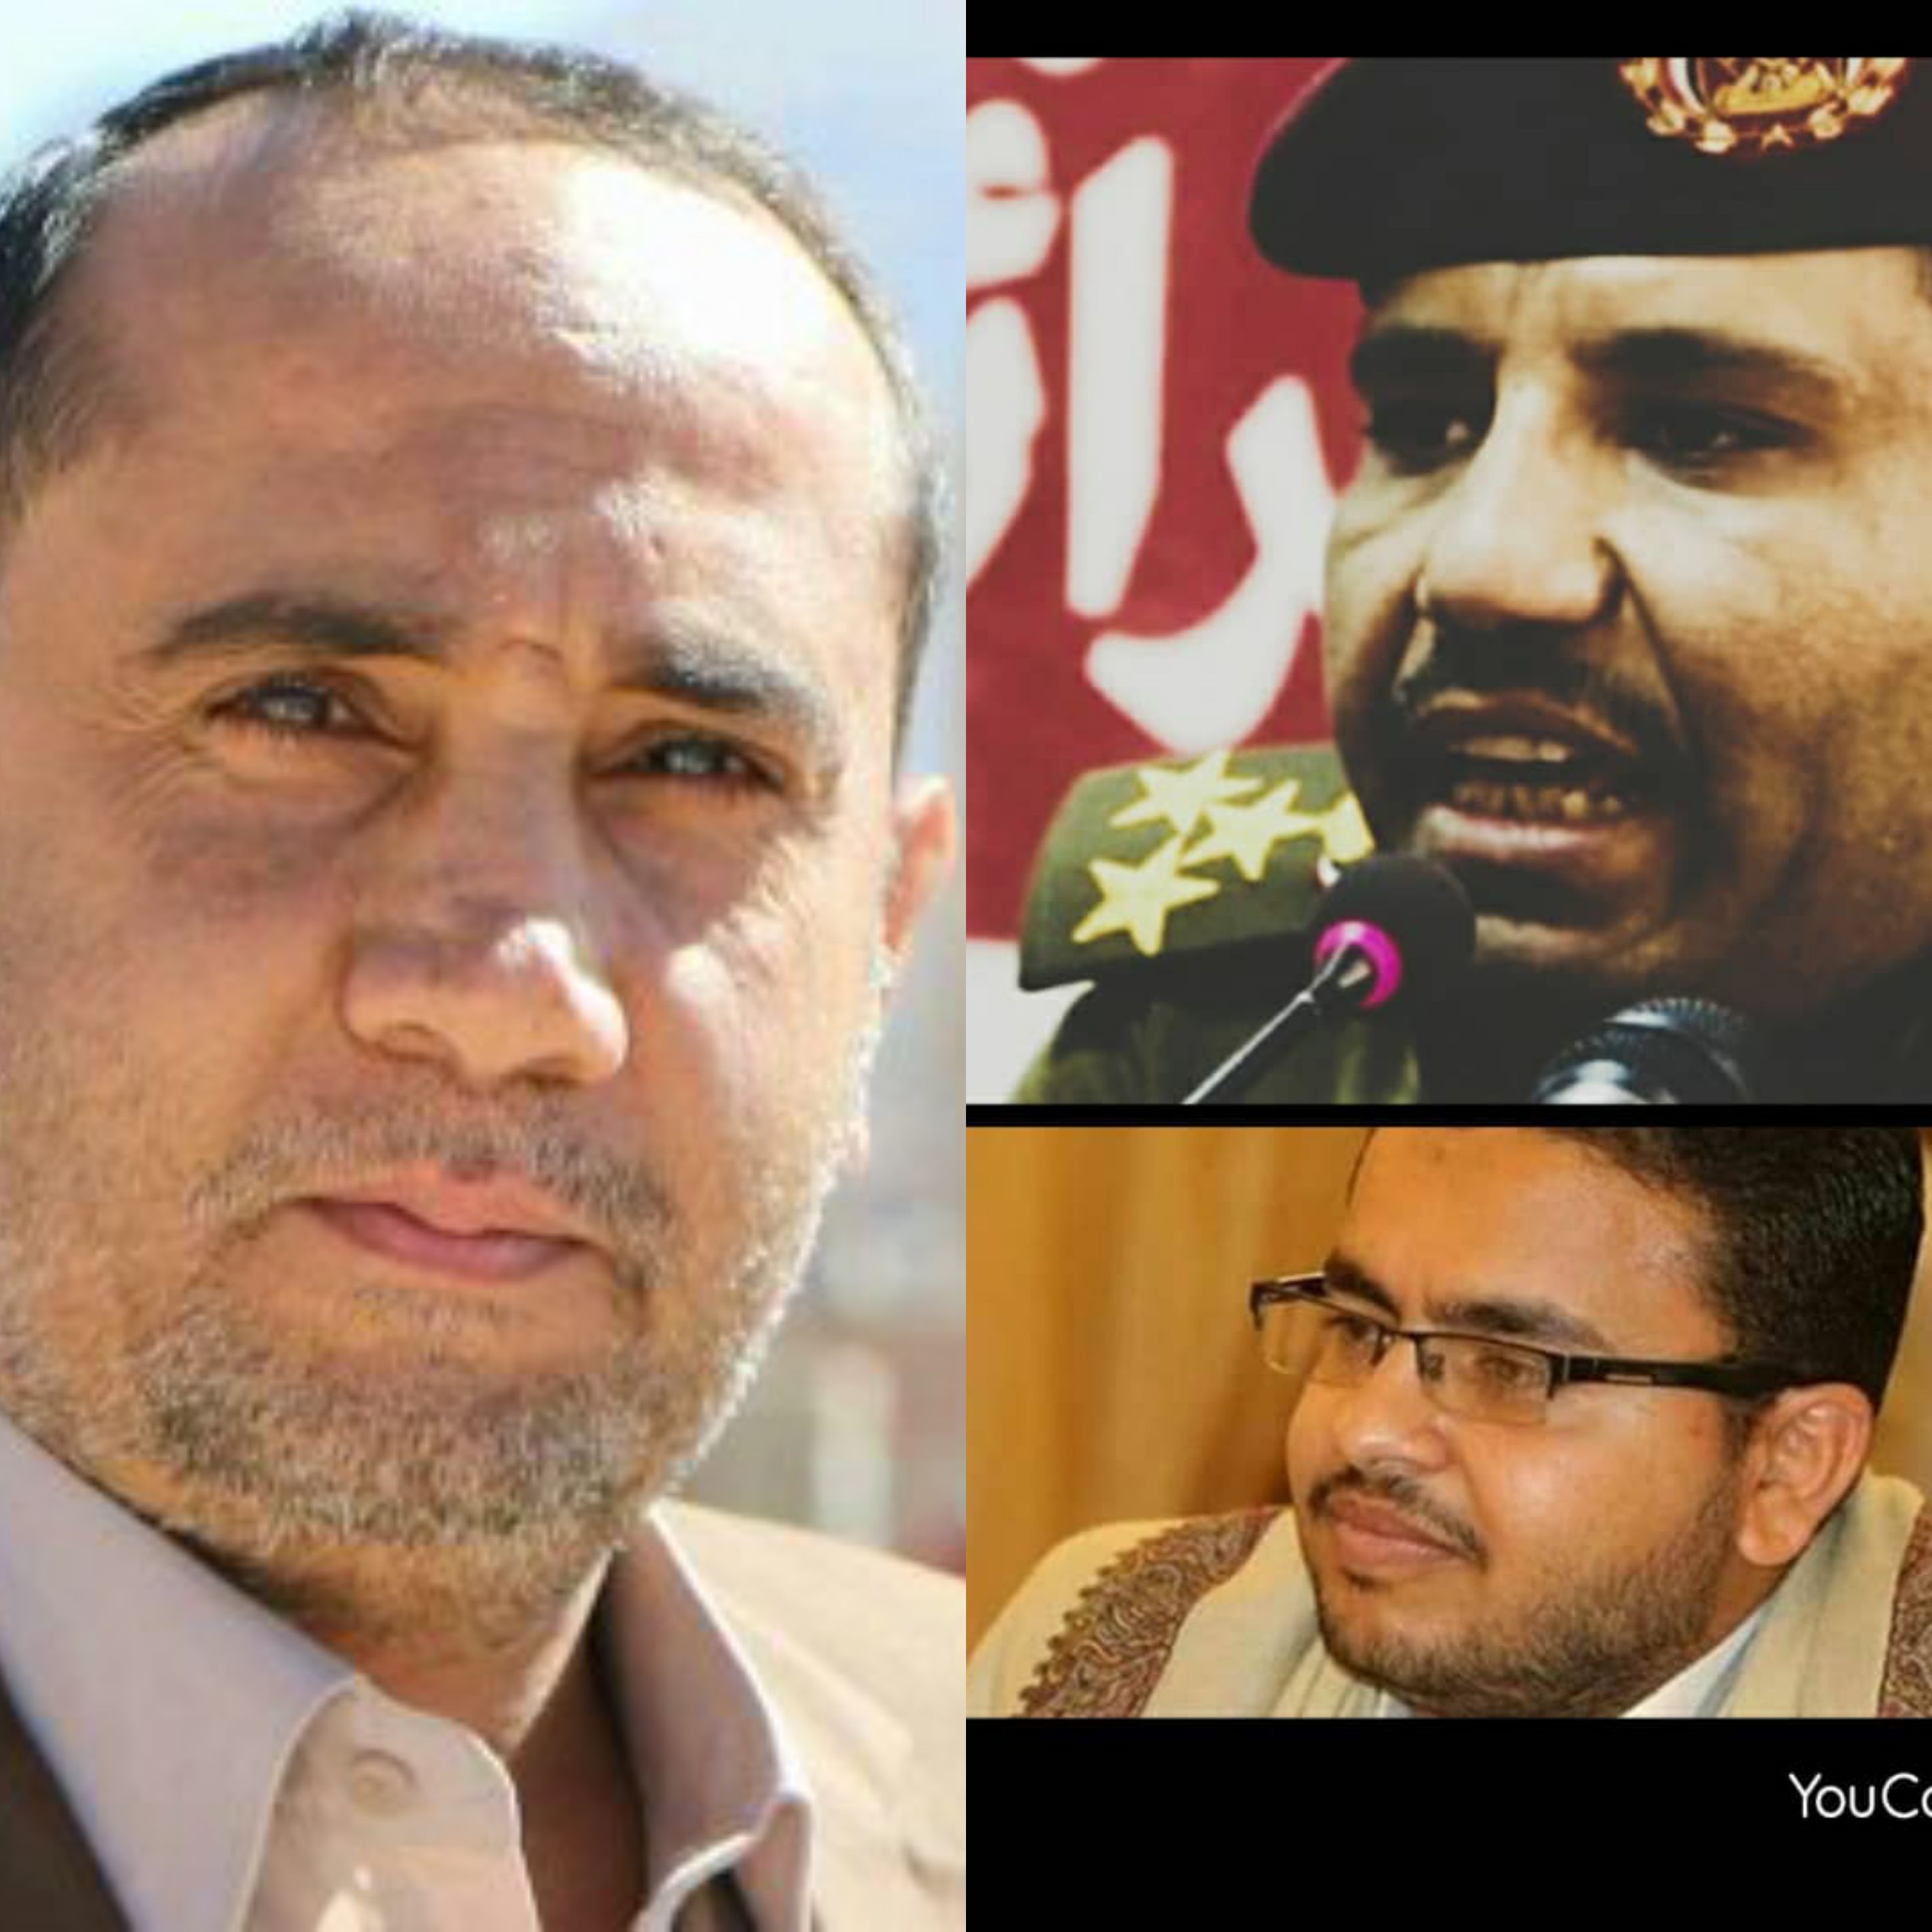 تشكيل مطبخ اعلامي لاستهداف الفريق سلطان السامعي و البرلماني احمد حاشد